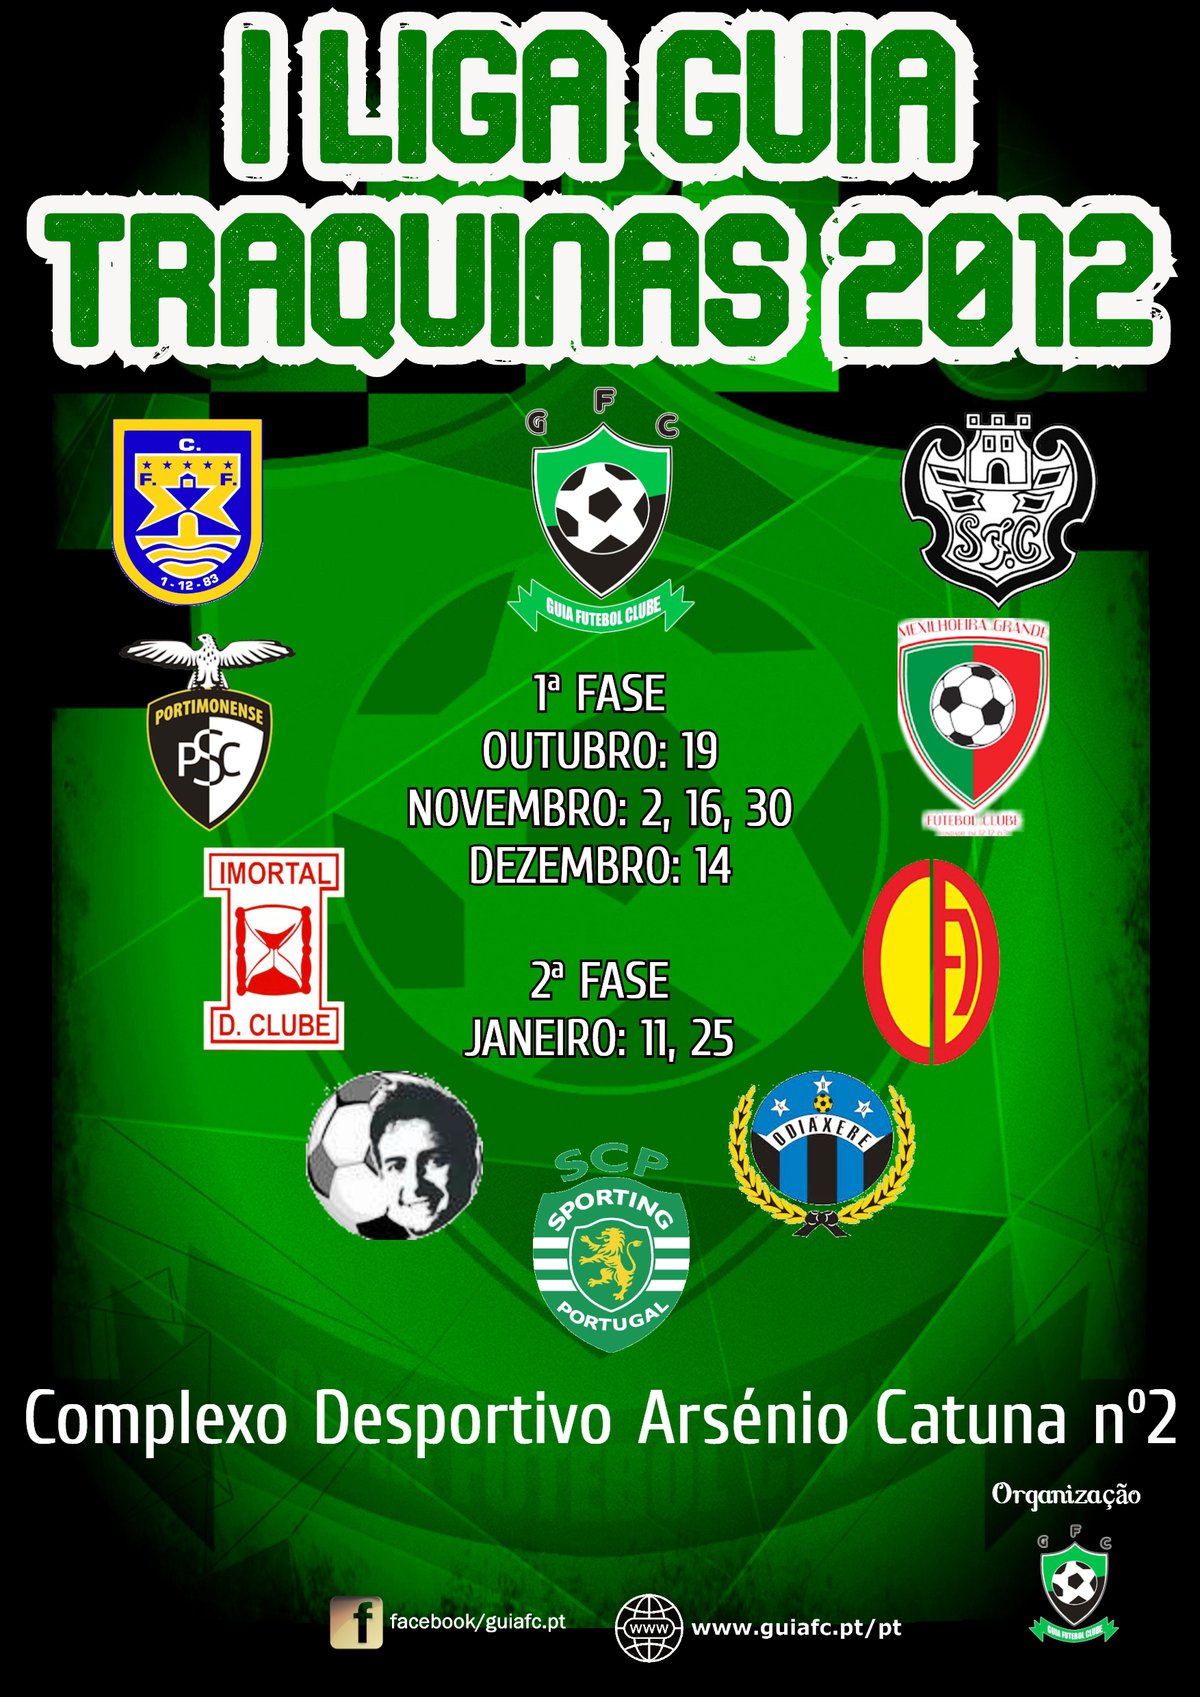 I Liga Guia Traquinas 2012